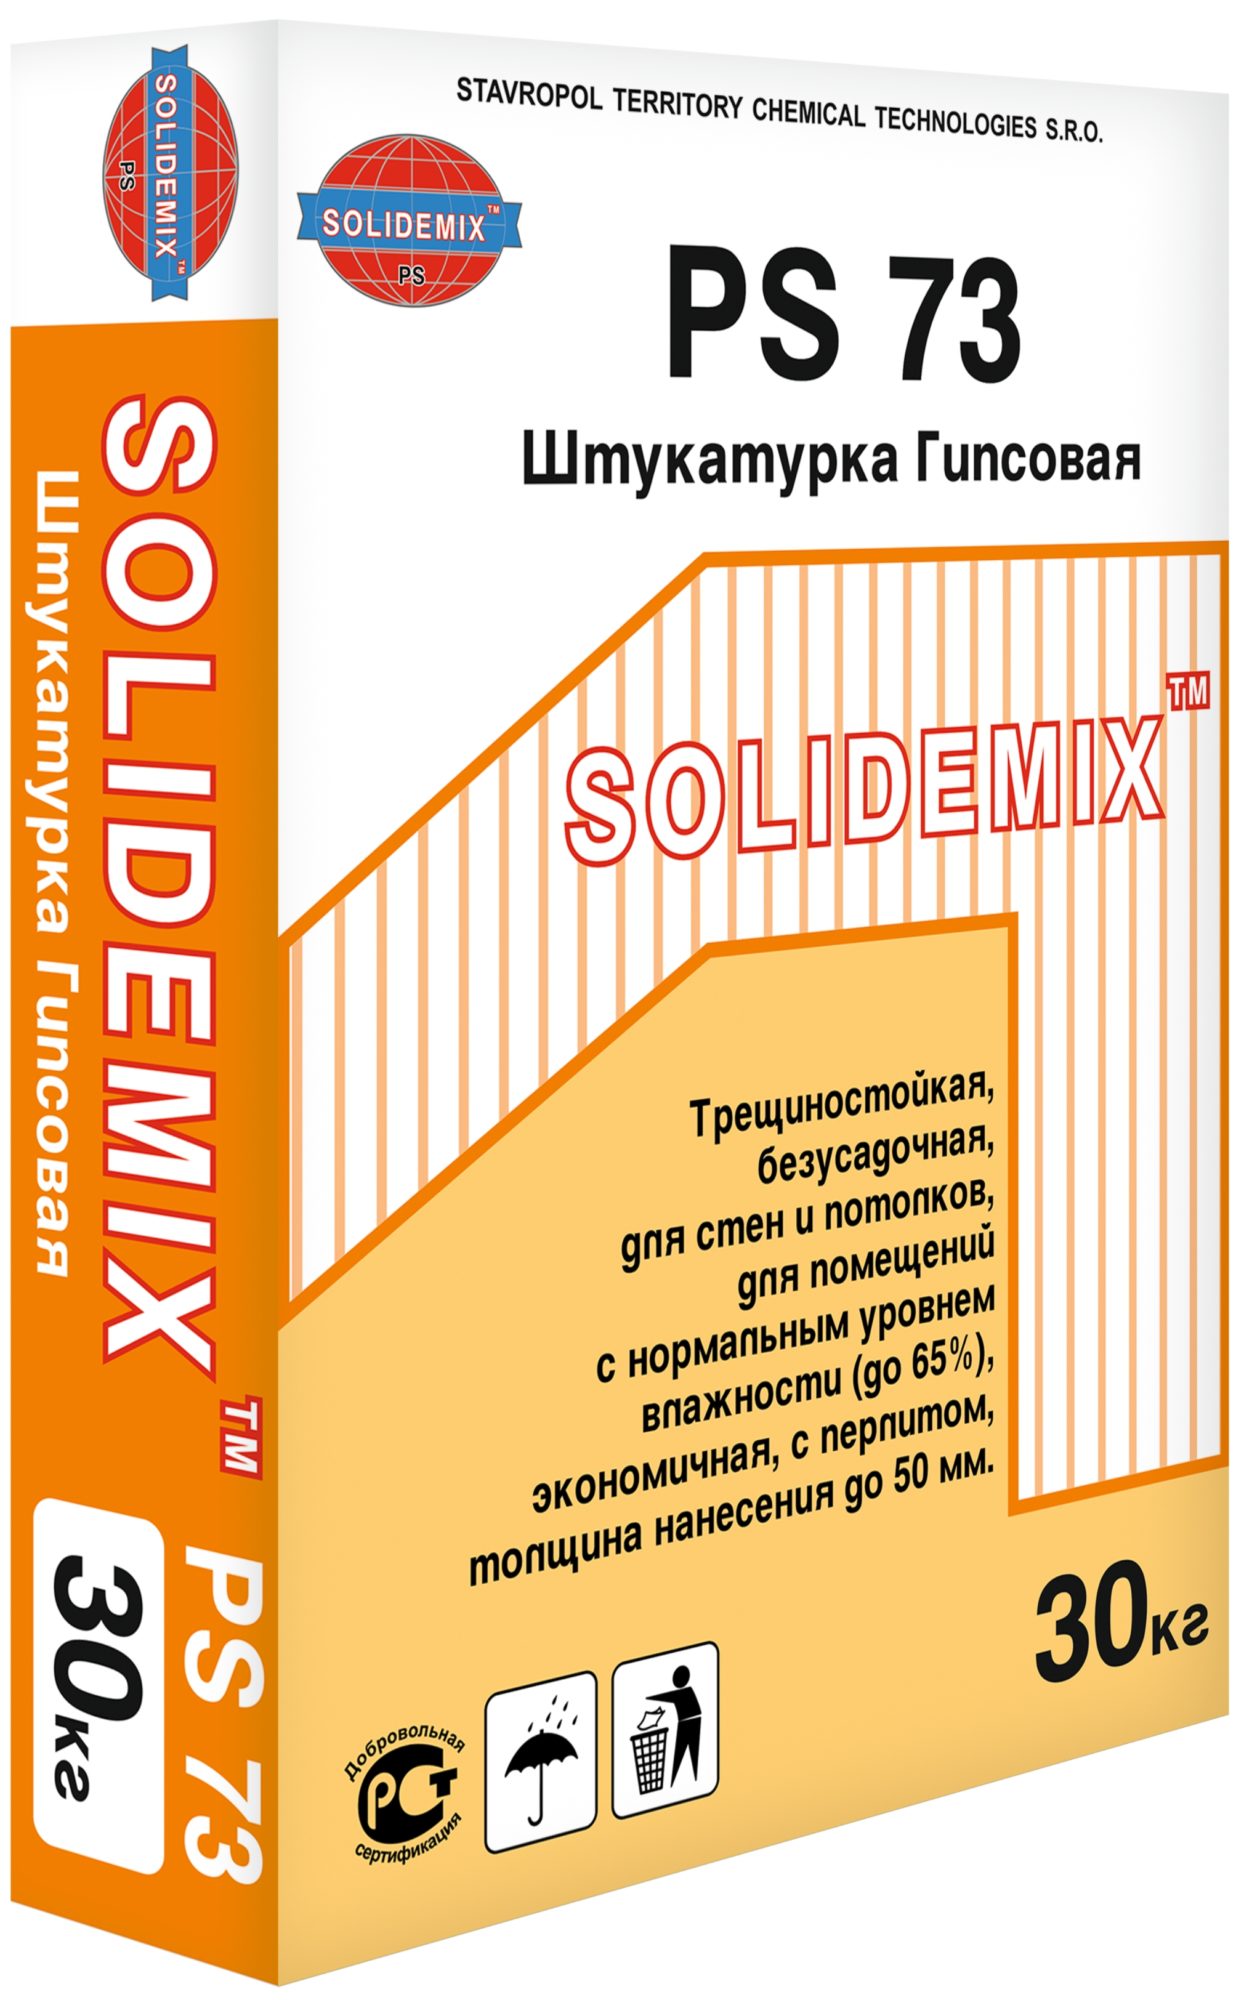 Купить Штукатурка Гипсовая «SOLIDEMIX РН PS 73» от SOLIDEMIX